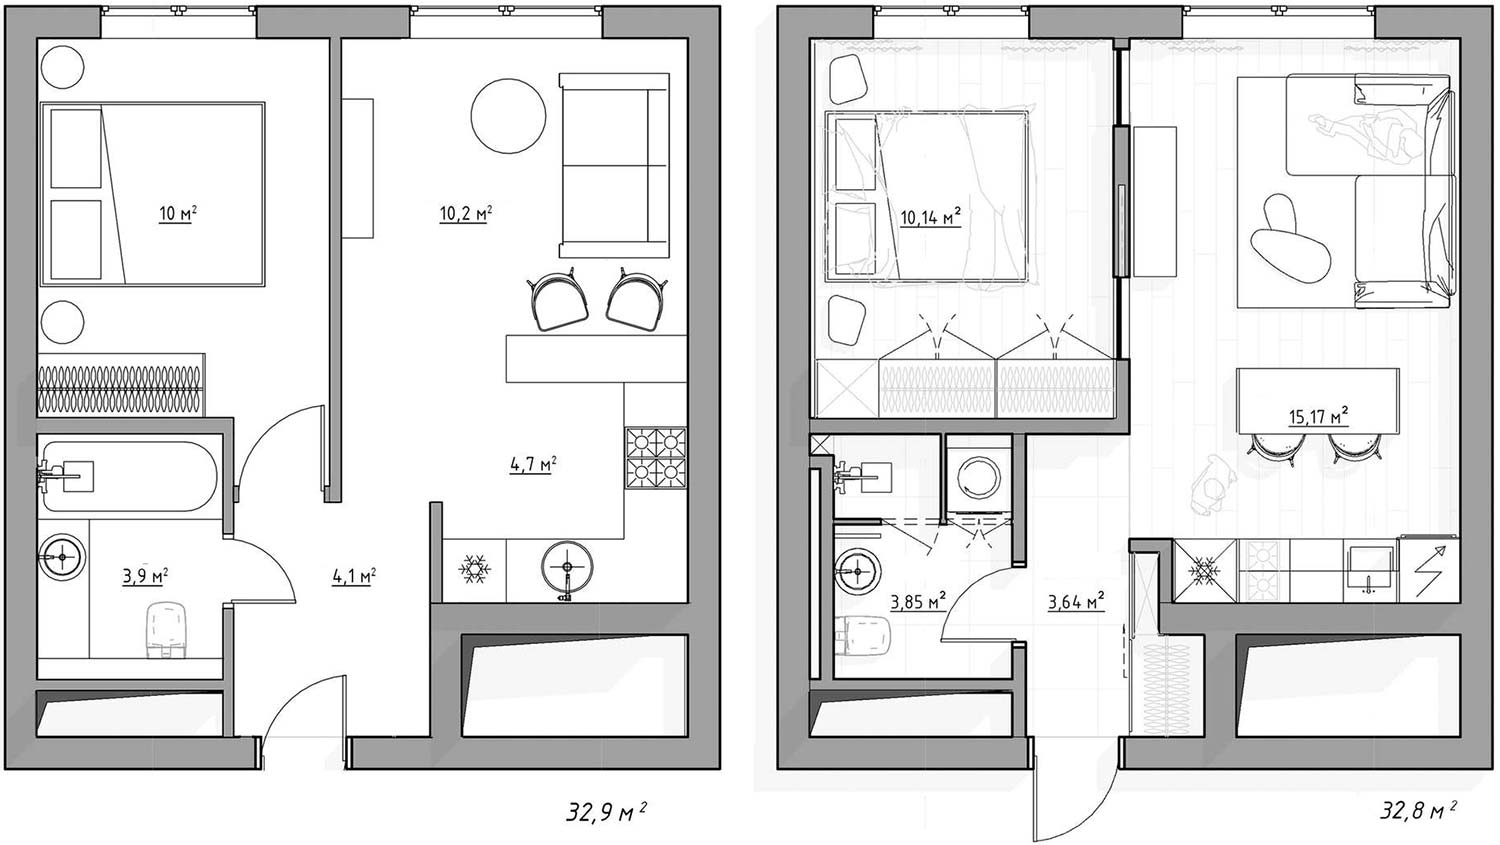 Fiatal nő 33m2-es új lakása visszafogott, modern lakberendezéssel, személyre szabott térrel